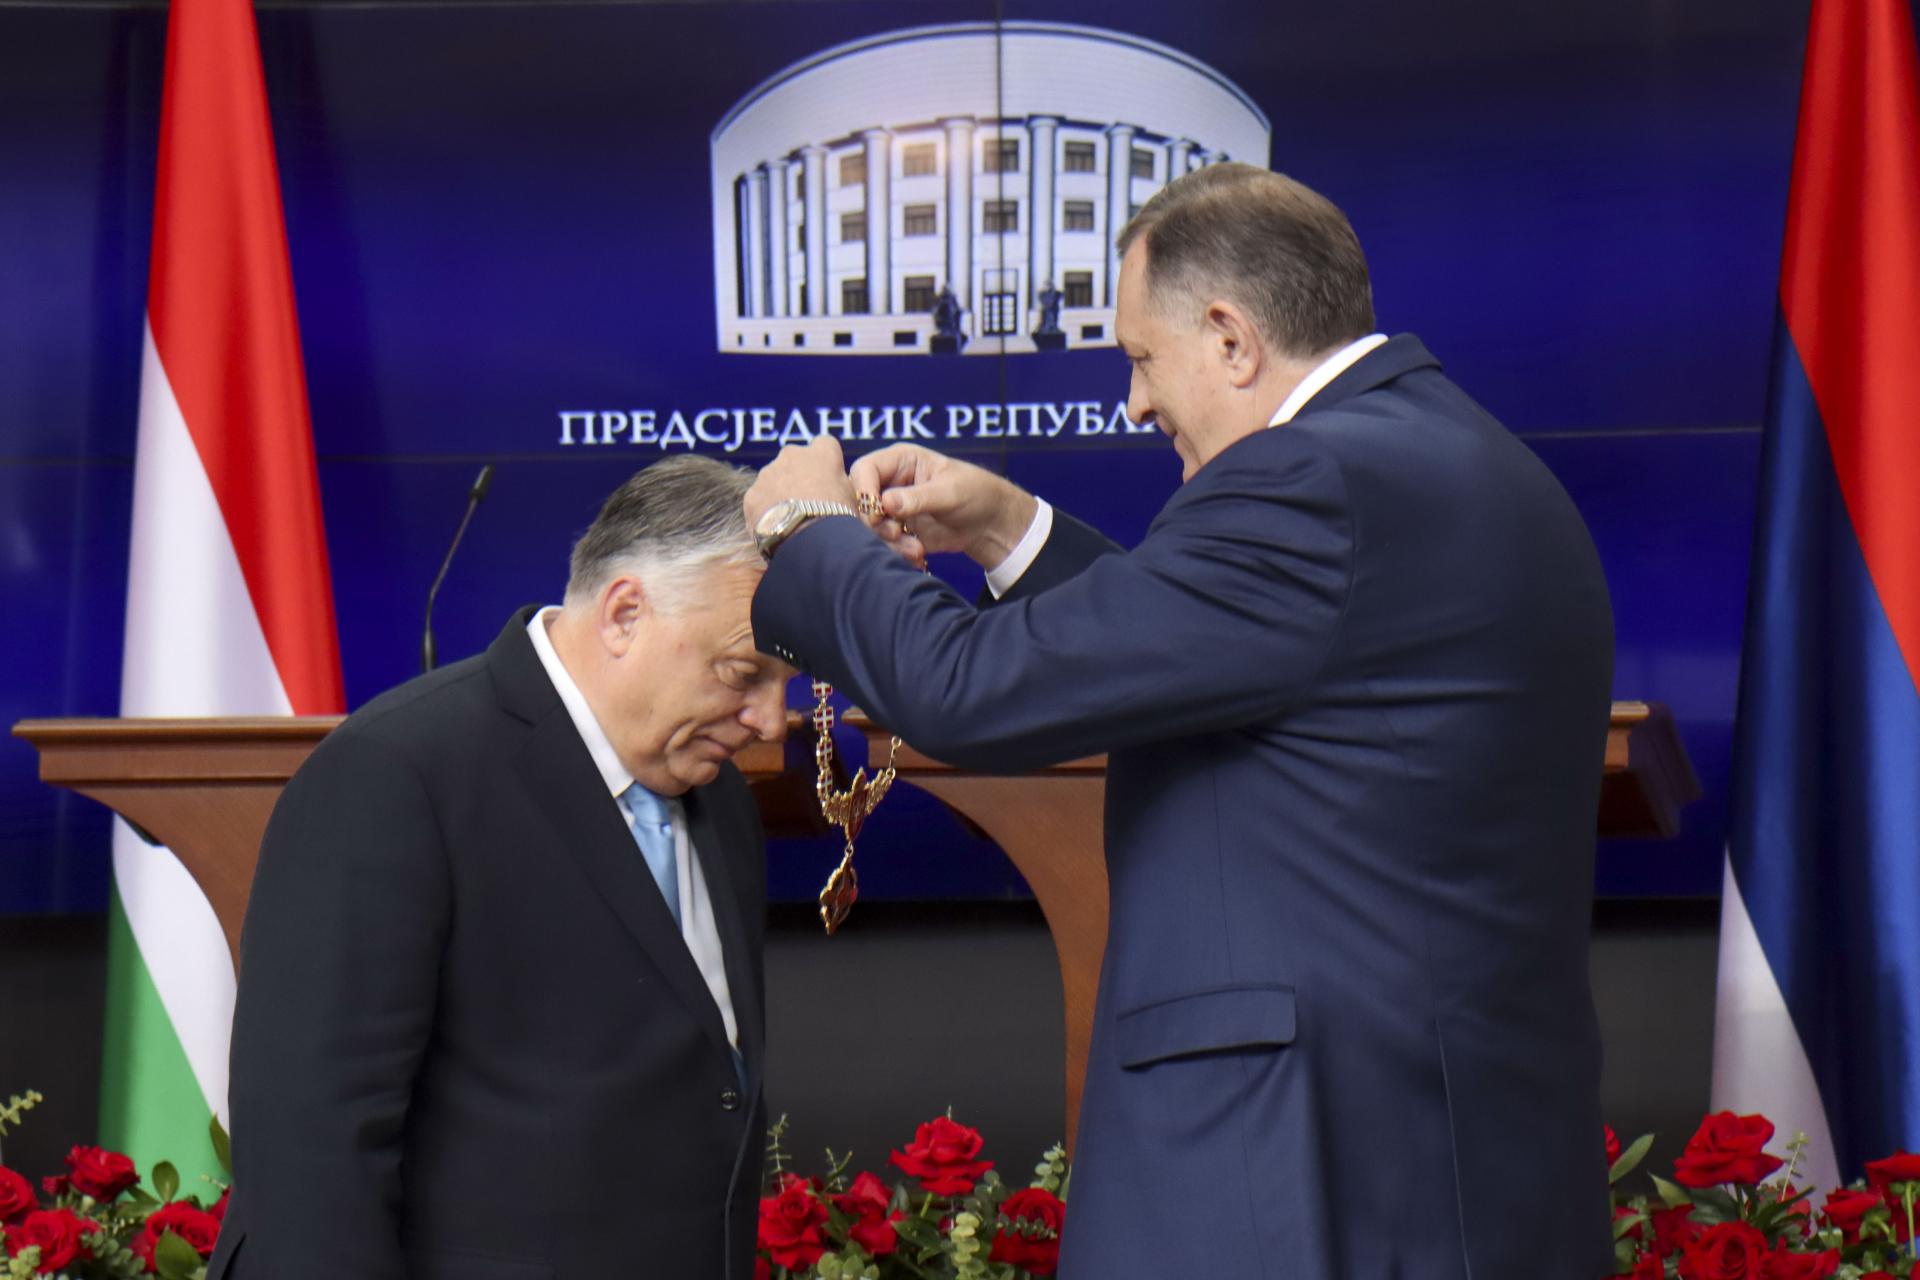 Orbán dostal najvyššie vyznamenanie Republiky srbskej, o rok skôr ho dostal Putin